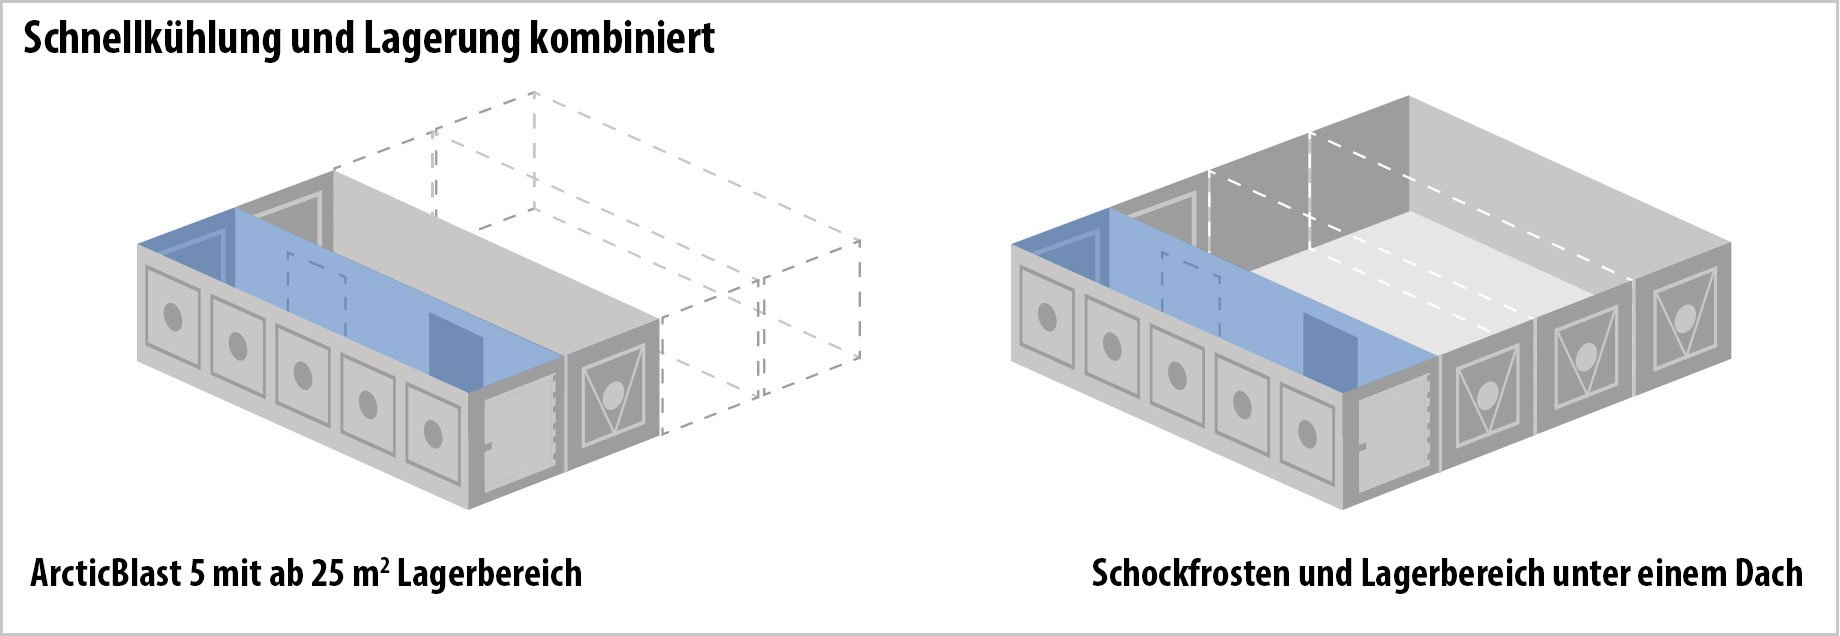 Titan Containers - Schnellkühlung und Lagerung kombiniert